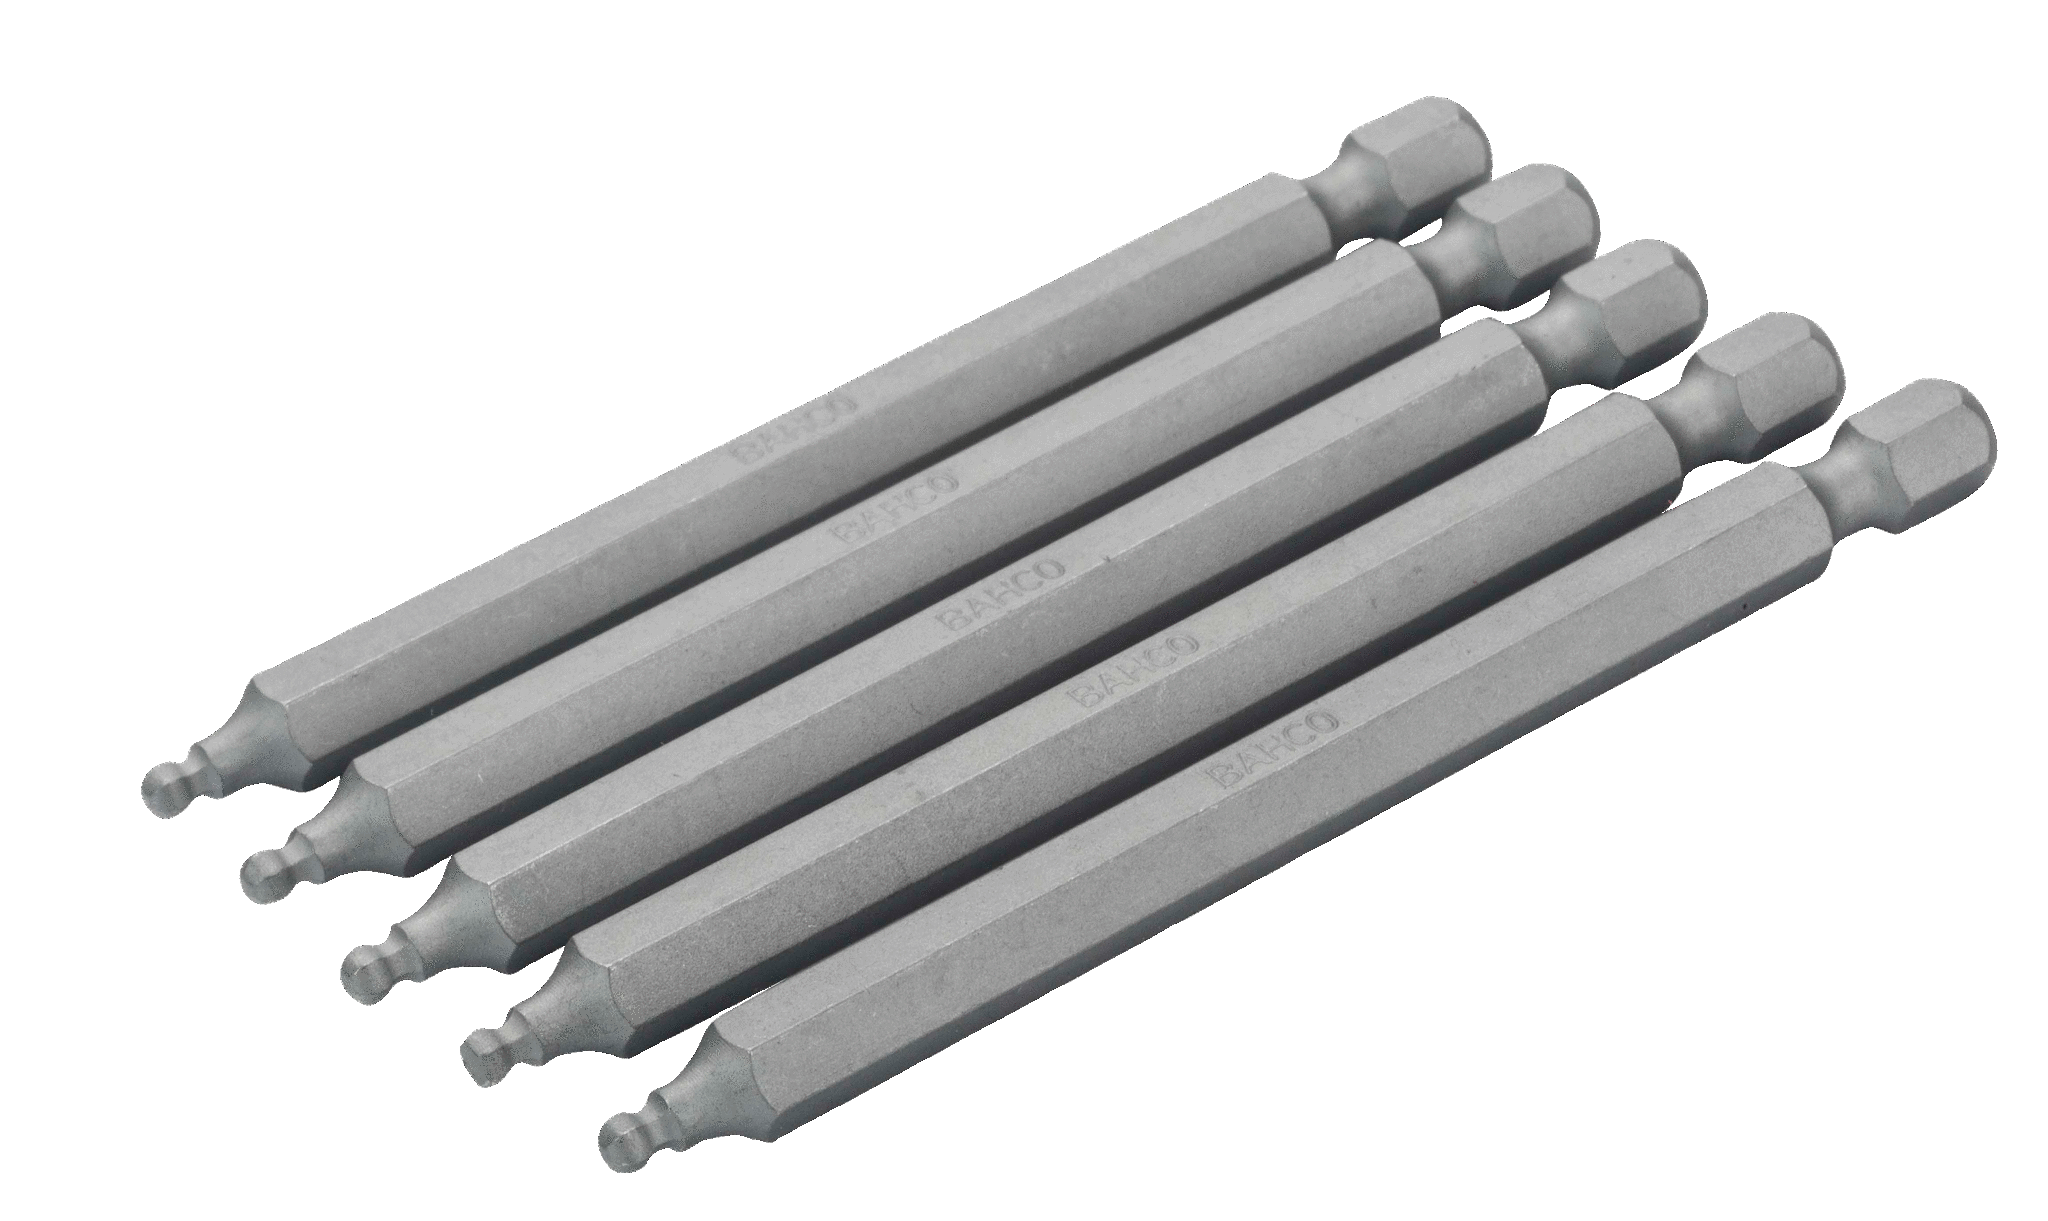 Шестигранные биты с шаровым наконечником для стандартных отверток, метрические размеры, 89 мм BAHCO 59S/H5BALL